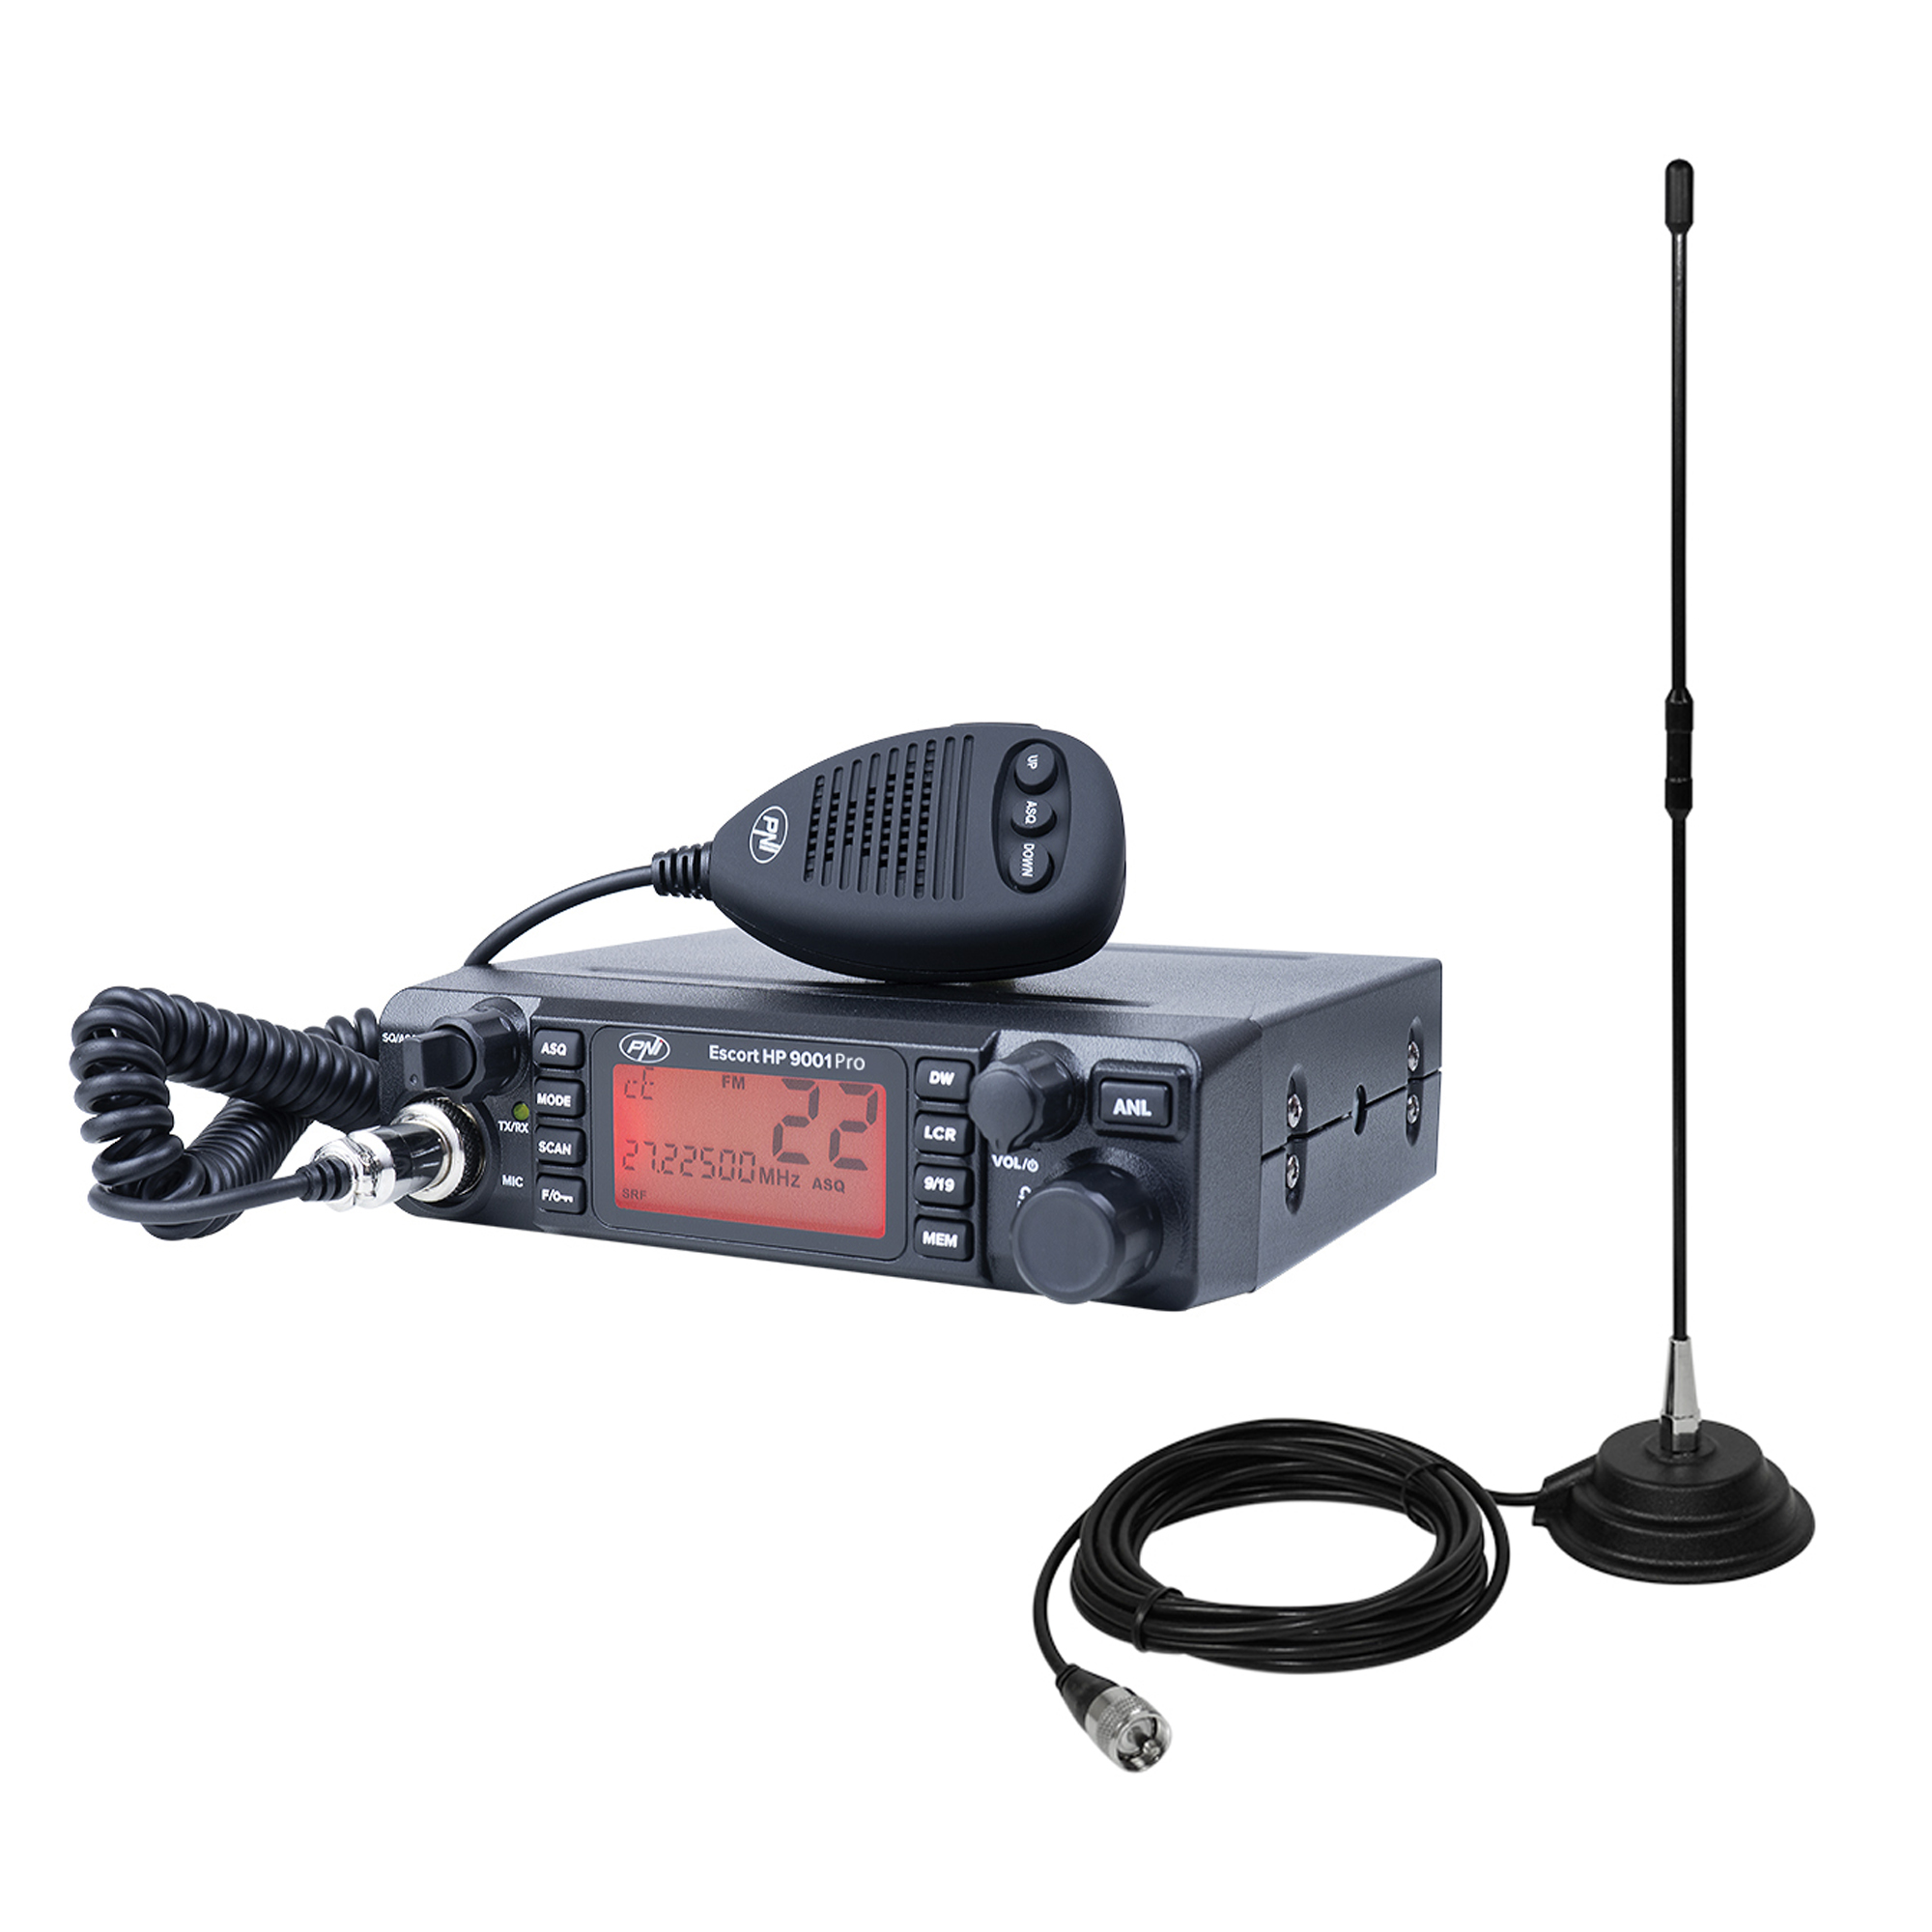 Pachet Statie radio CB PNI ESCORT HP 9001 PRO ASQ reglabil, AM-FM, 12V/24V, 4W + Antena CB PNI Extra 40 cu magnet, 30W, 26-30MHz, SWR 1.0, fibra de sticla image